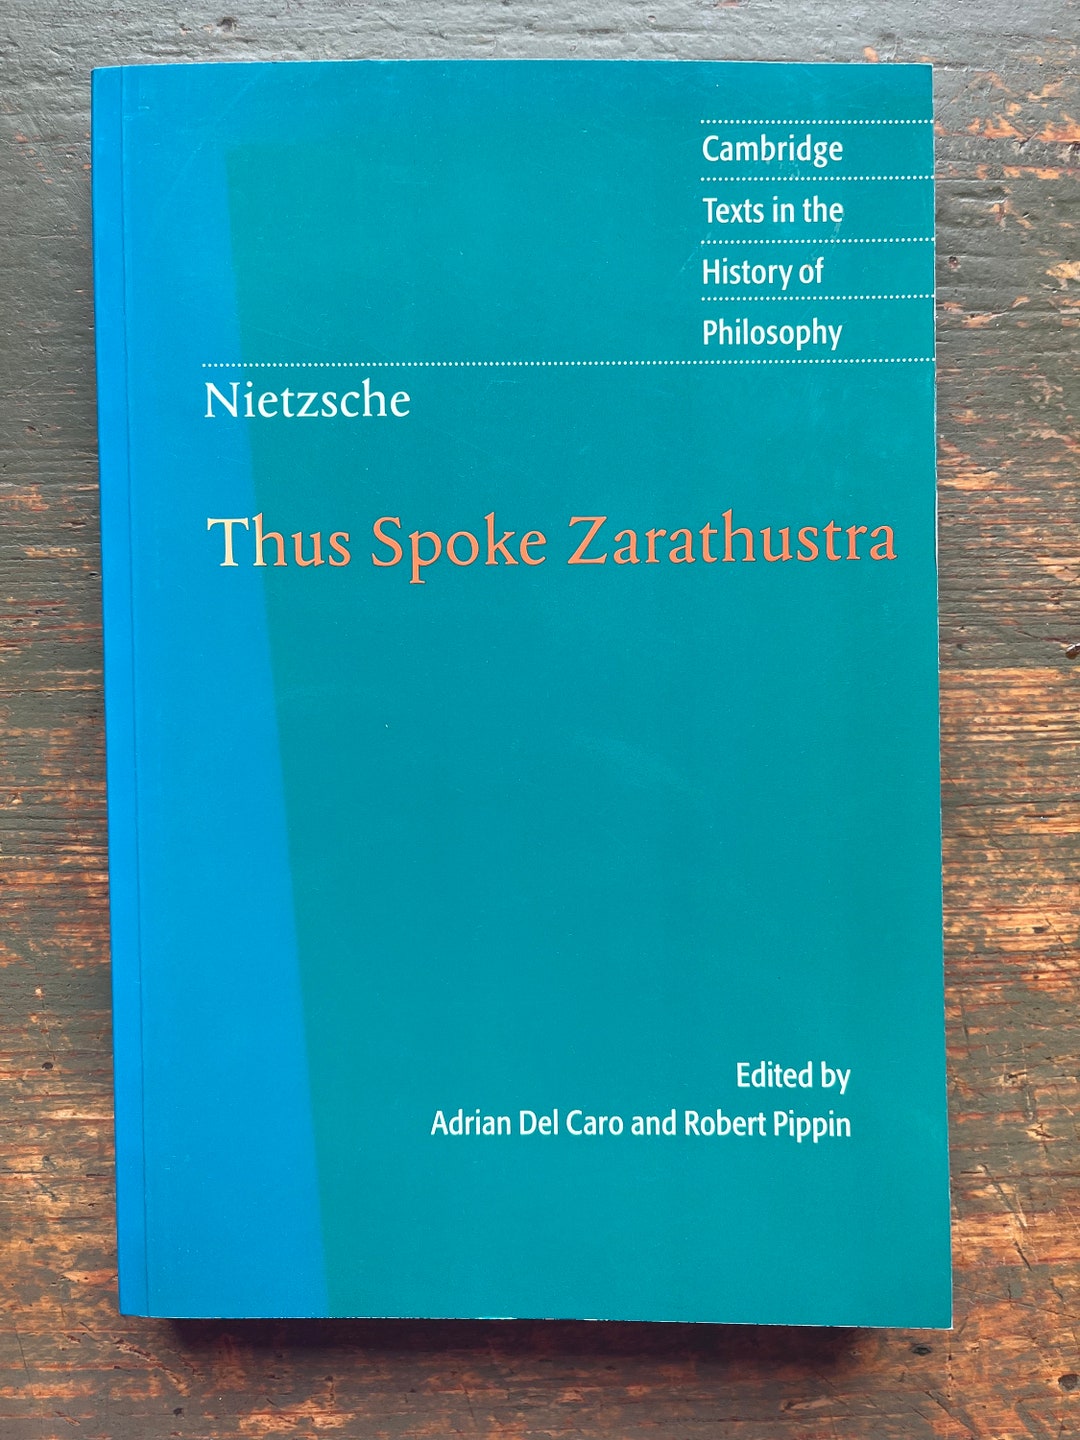 Etsy　Friedrich　Spoke　Zarathustra　Nietzsche　Thus　Cambridge